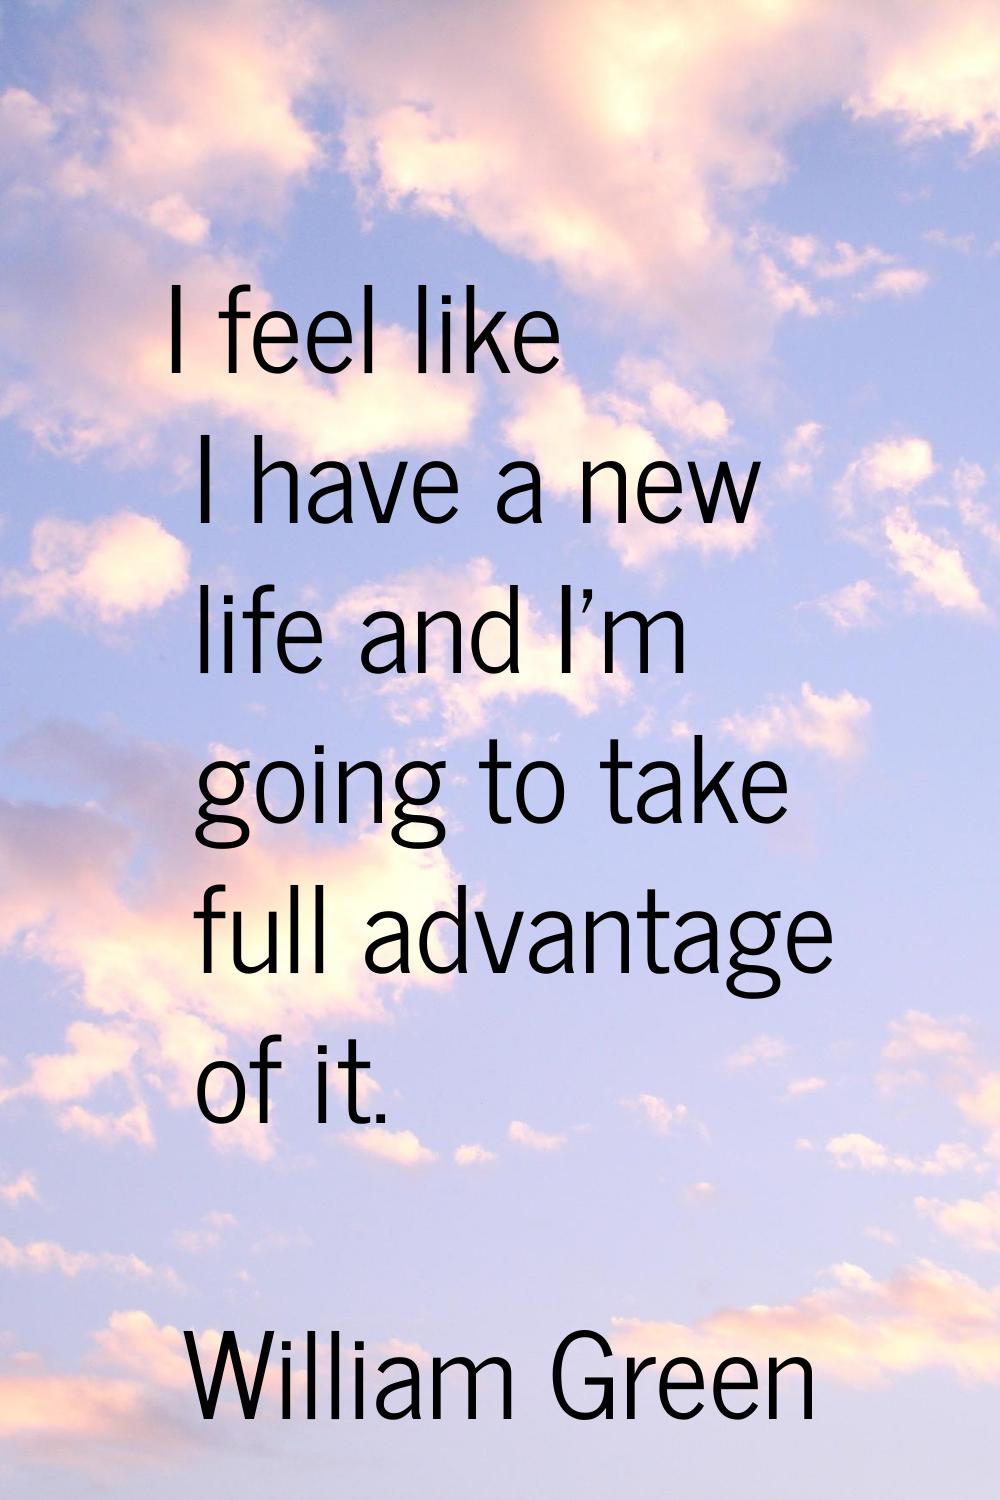 I feel like I have a new life and I'm going to take full advantage of it.